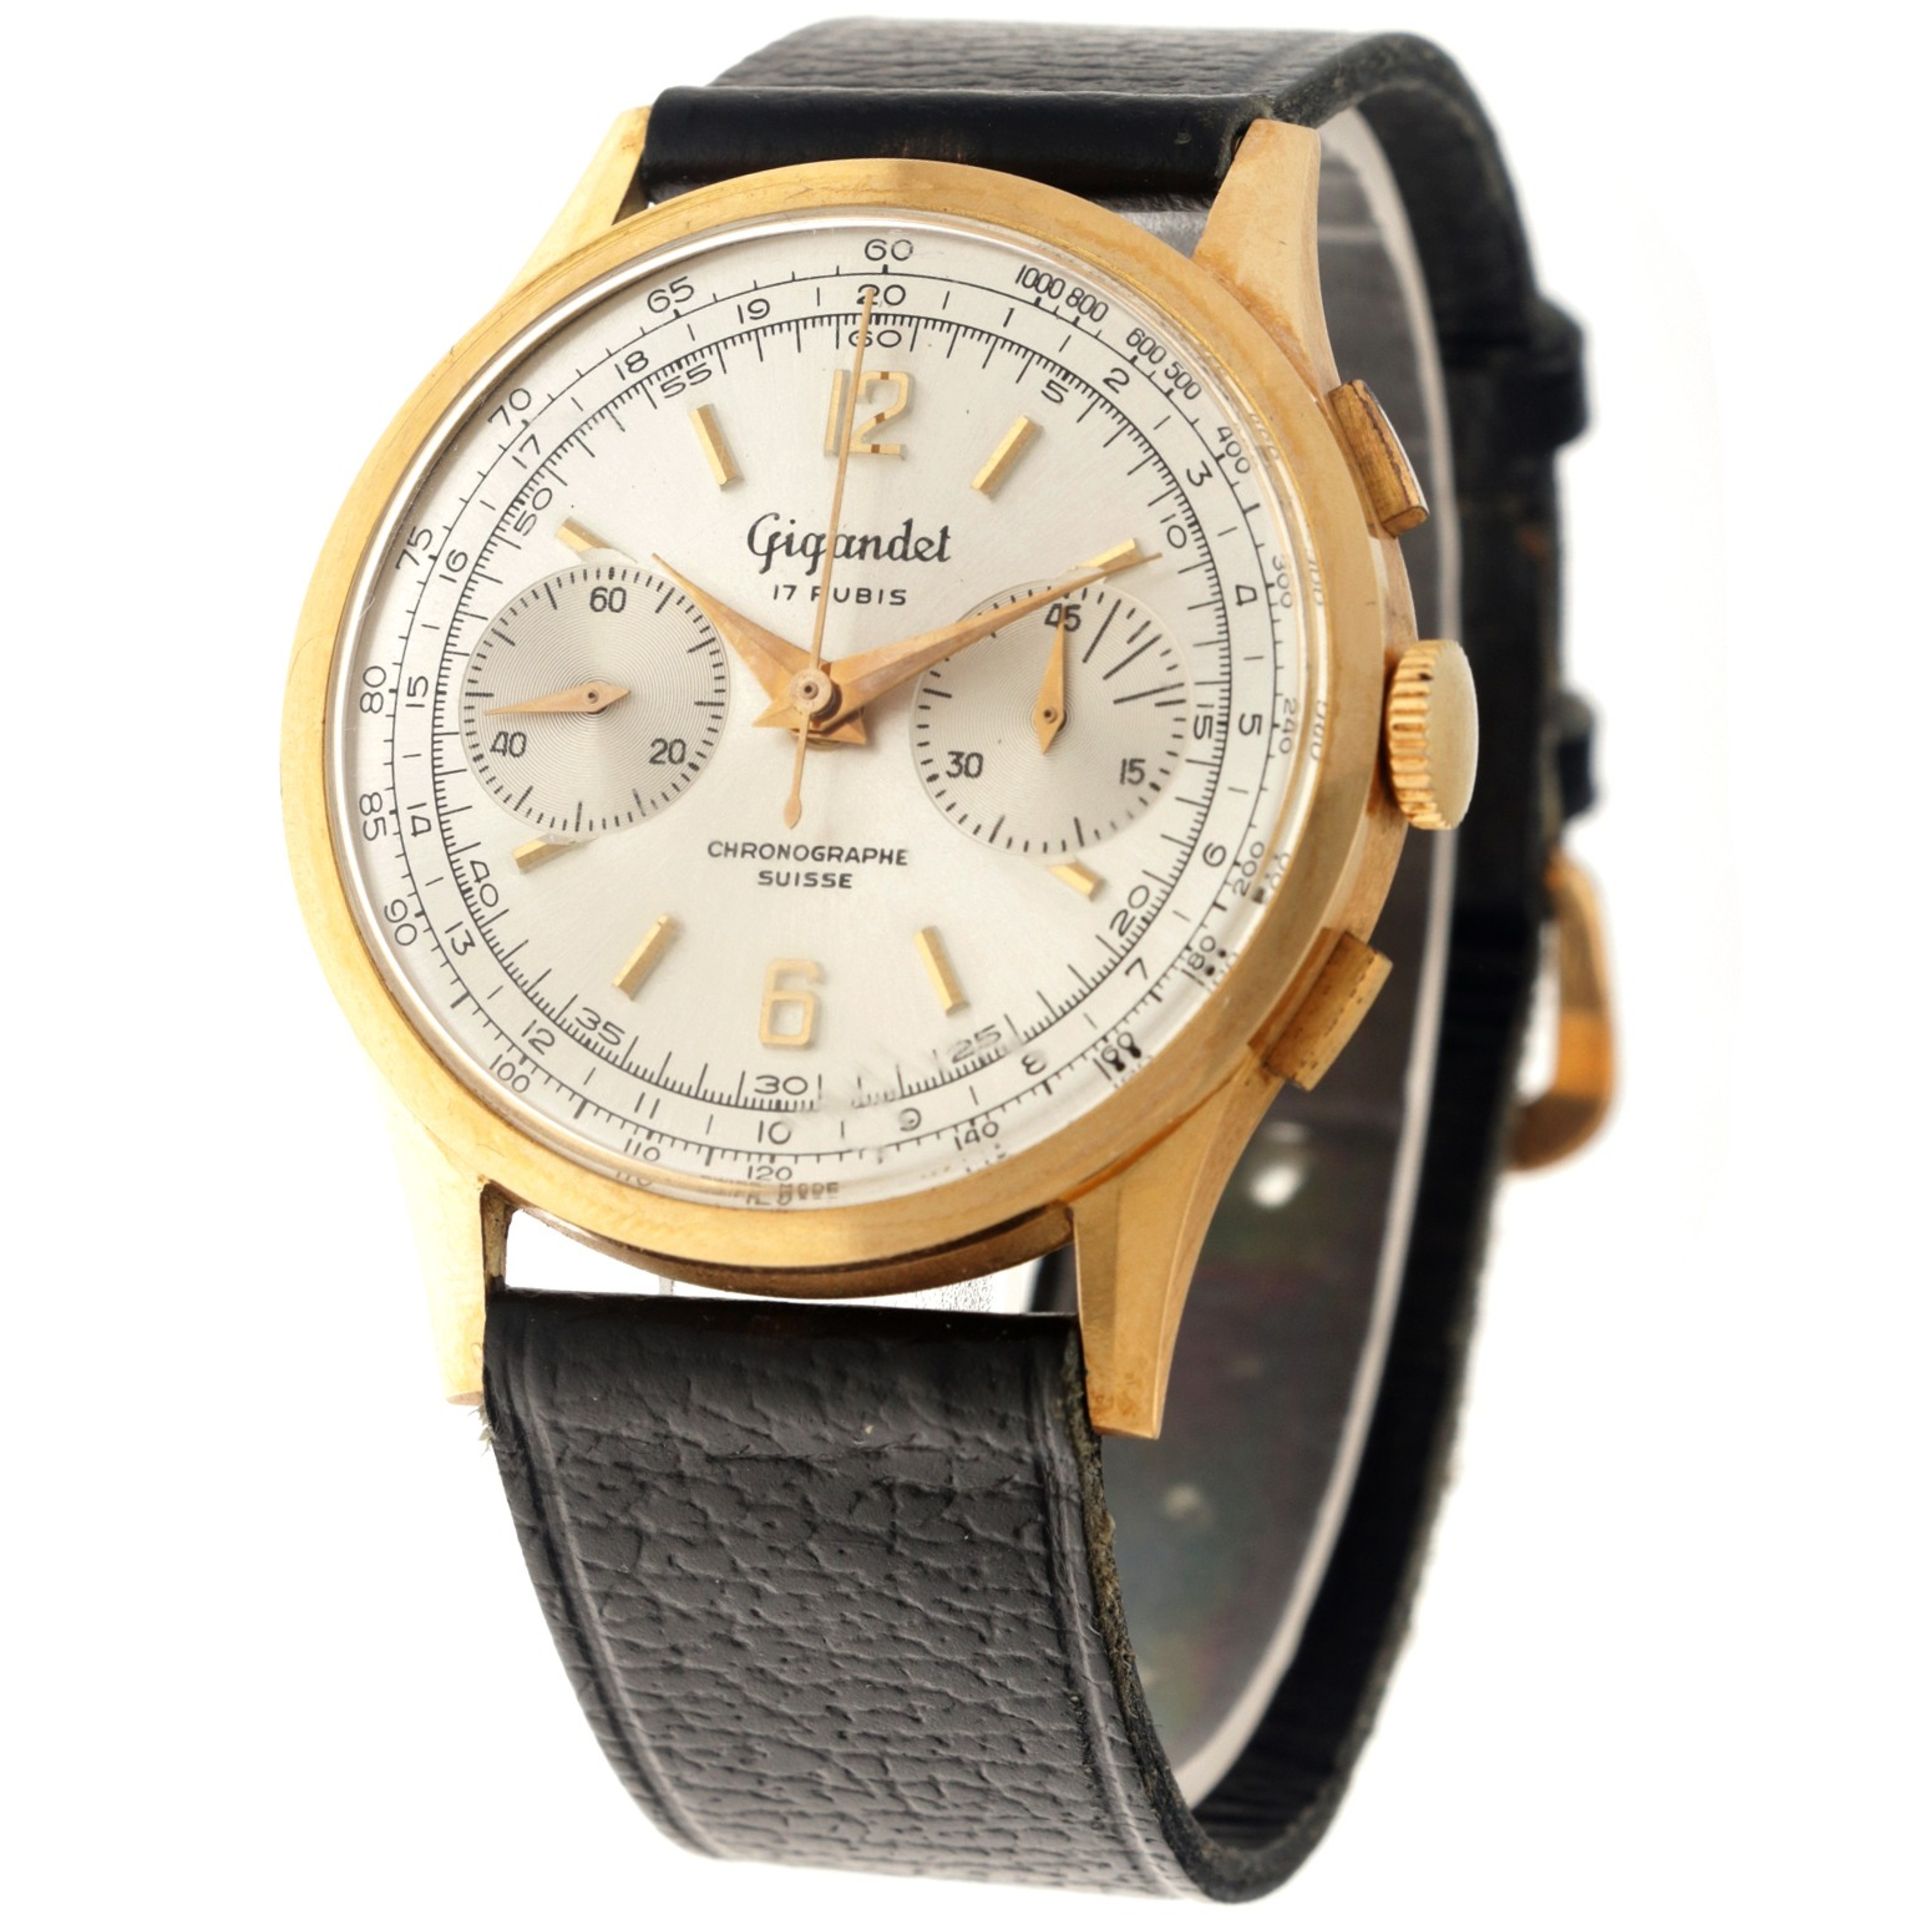 No Reserve - Gigandet Vintage  Chronograph 18K. - Men's watch.  - Bild 2 aus 6